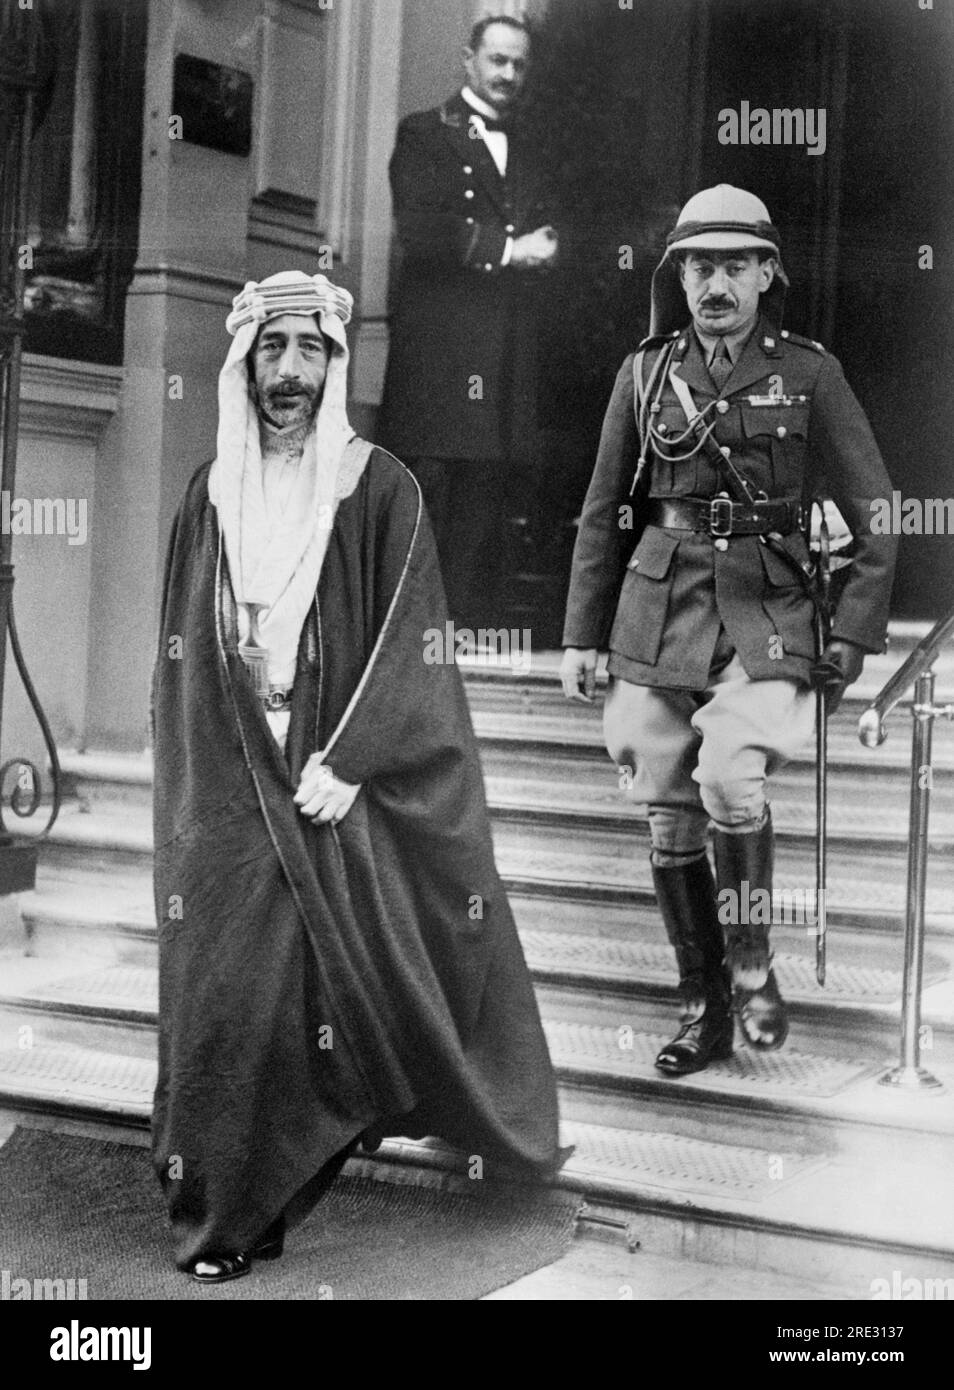 London, England: 18. November 1927 King Feisal of Iraq verlässt sein Hotel, um sich mit King George im Buckingham Palace zu treffen. Der Irak ist ein Territorium, das von König Feisal und Oberst Lawrence, dem "nicht gekrönten König der Araber", von der Türkei im Krieg abgeschüttelt wurde. Stockfoto